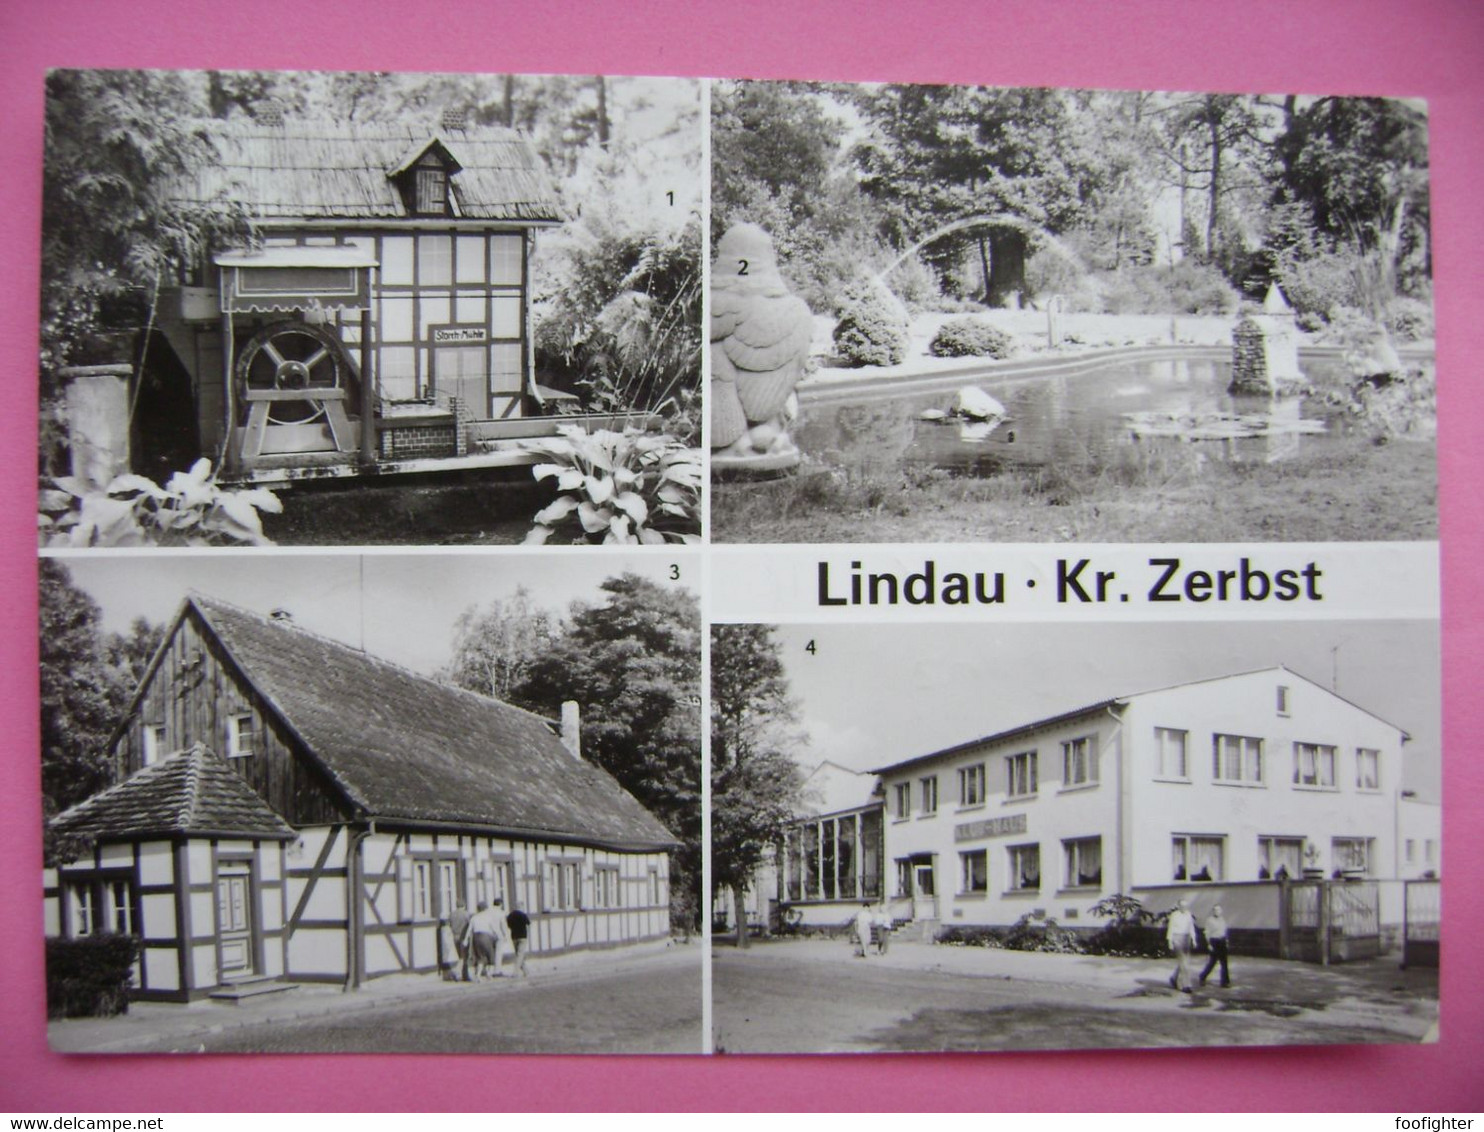 LINDAU Kr. Zerbst - Storchmühle, Parkanlagen, Grüne Straße, Klubhaus - Posted 1985 - Zerbst